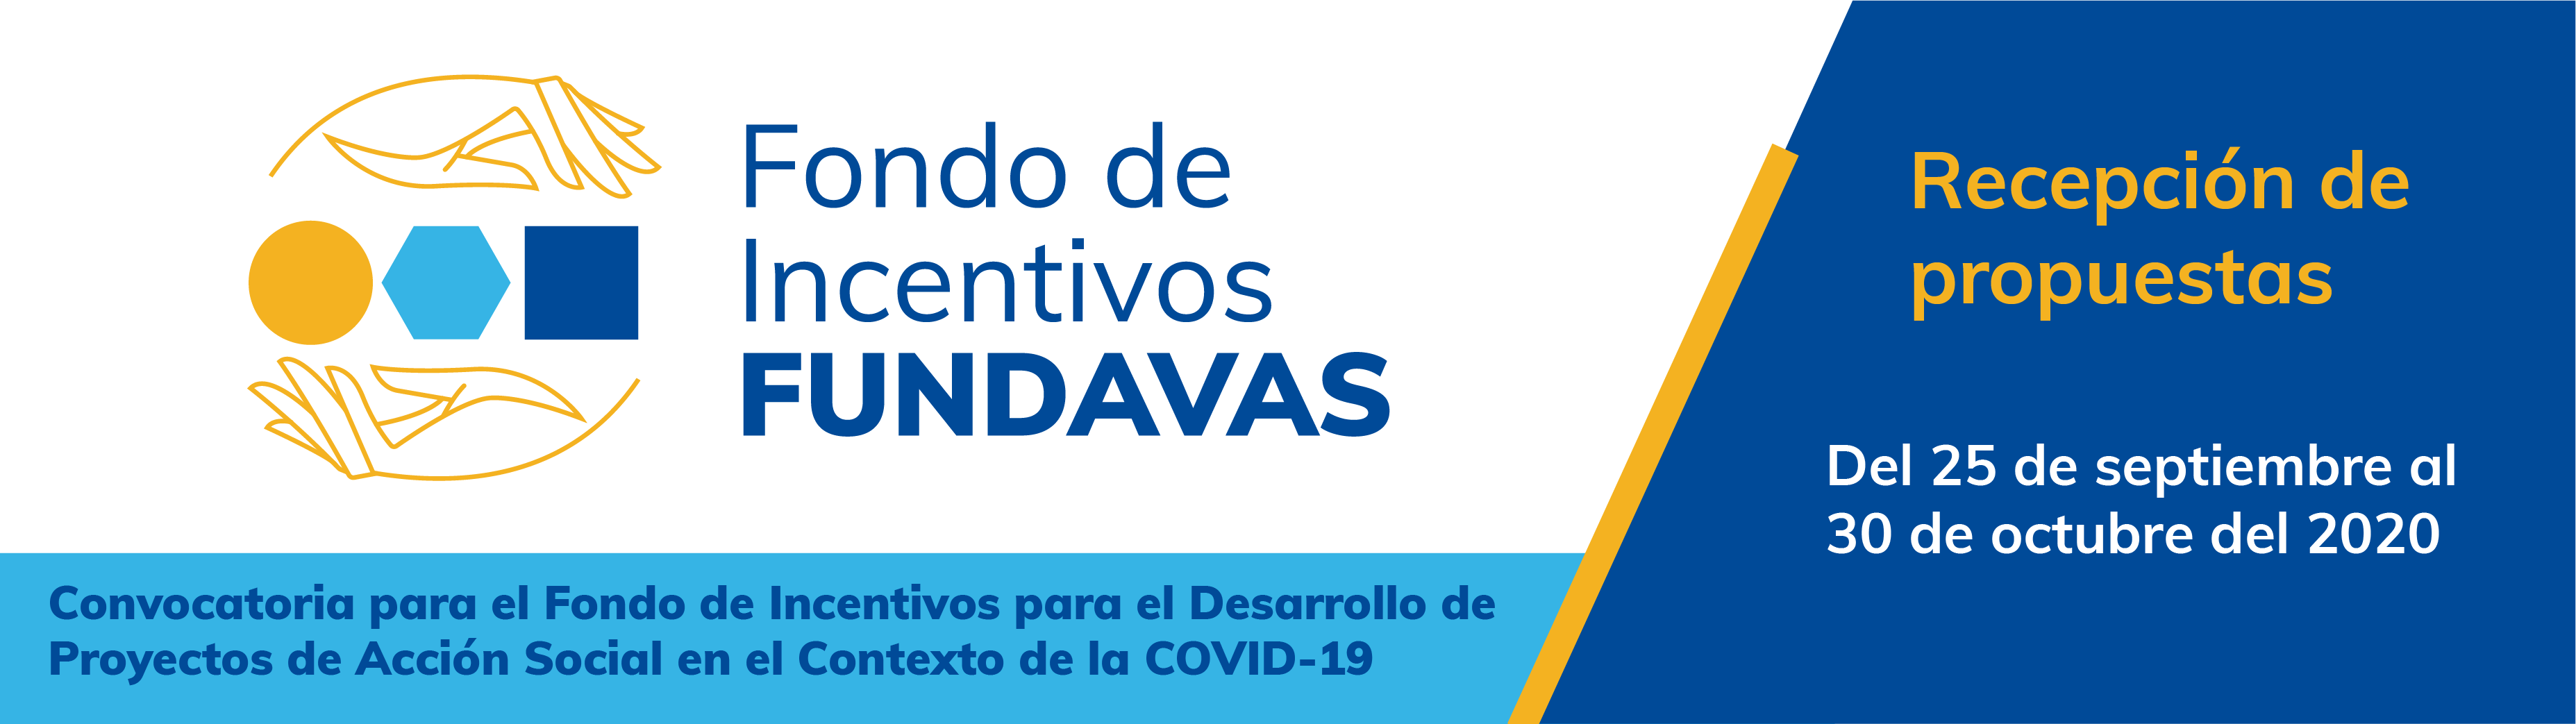 La convocatoria se habilitará del 25 de septiembre al 30 de octubre y su fin primordial es el abordaje de los distintos impactos provocados por la emergencia sanitaria COVID-19.